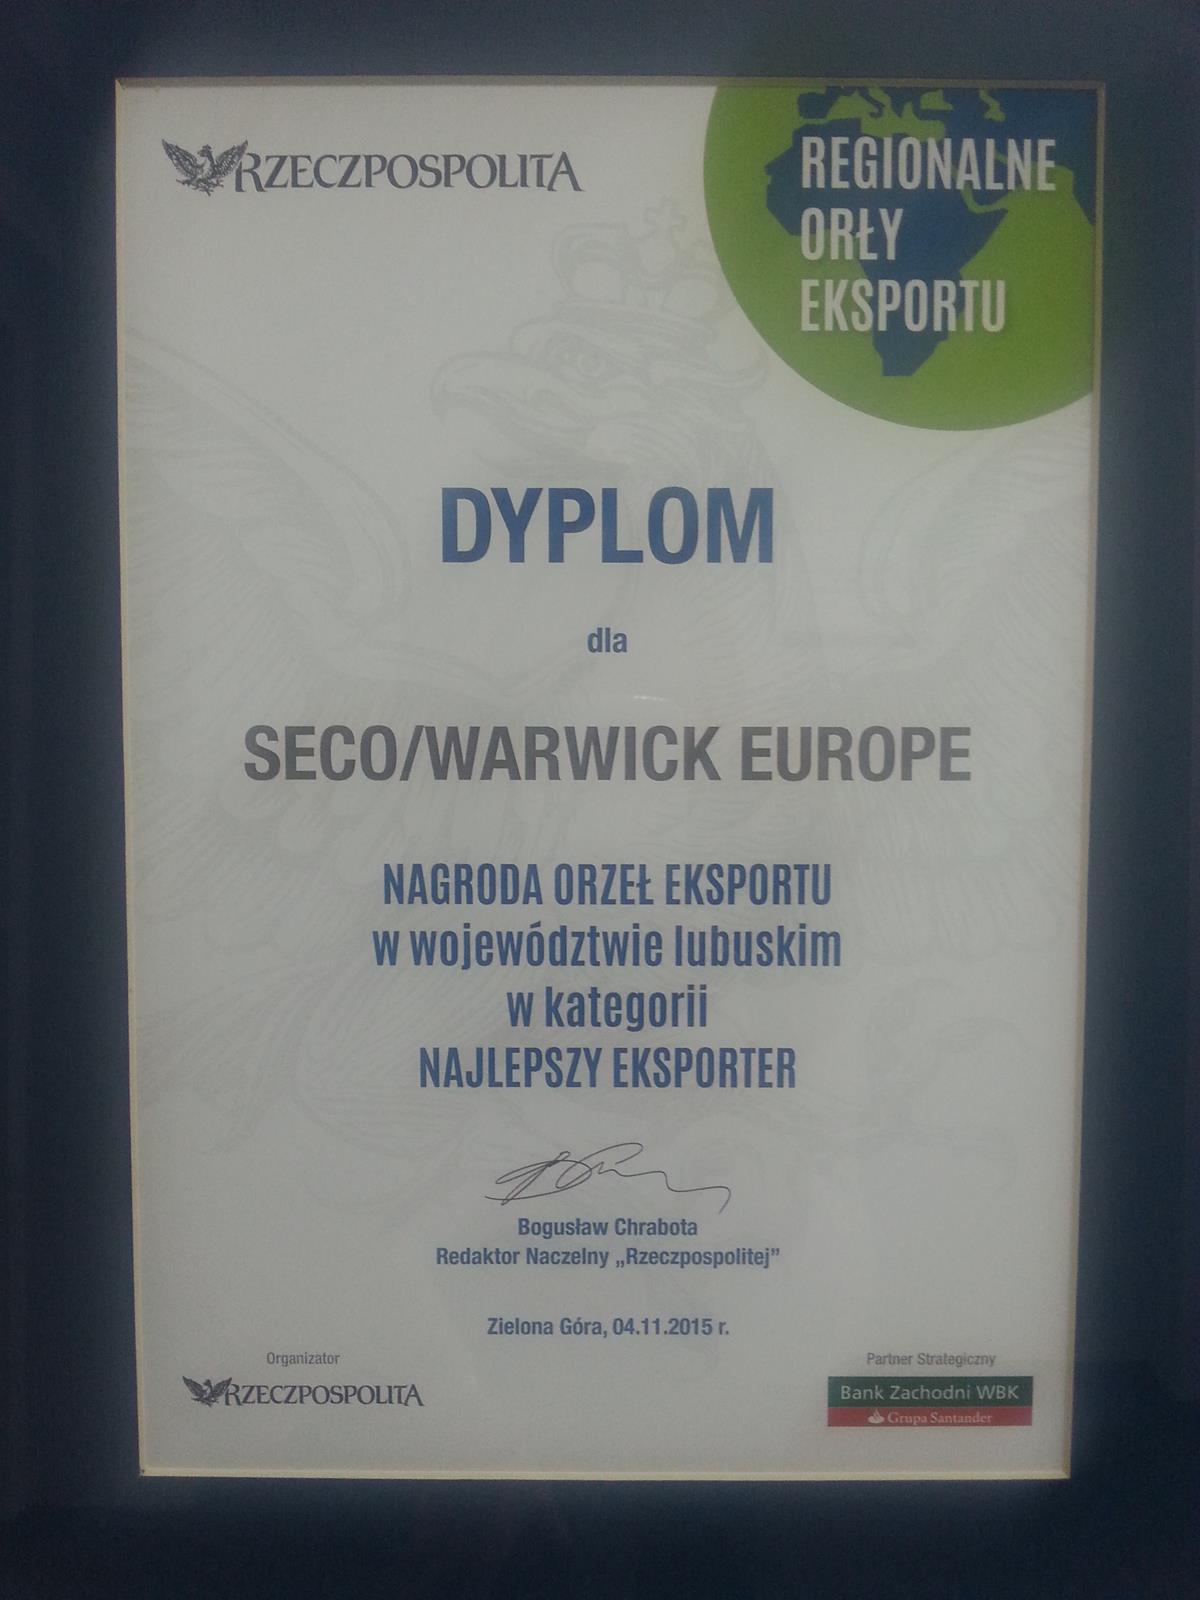 Die Auszeichnung „Export-Adler“ von „Rzeczpospolita“ für SECO/WARWICK